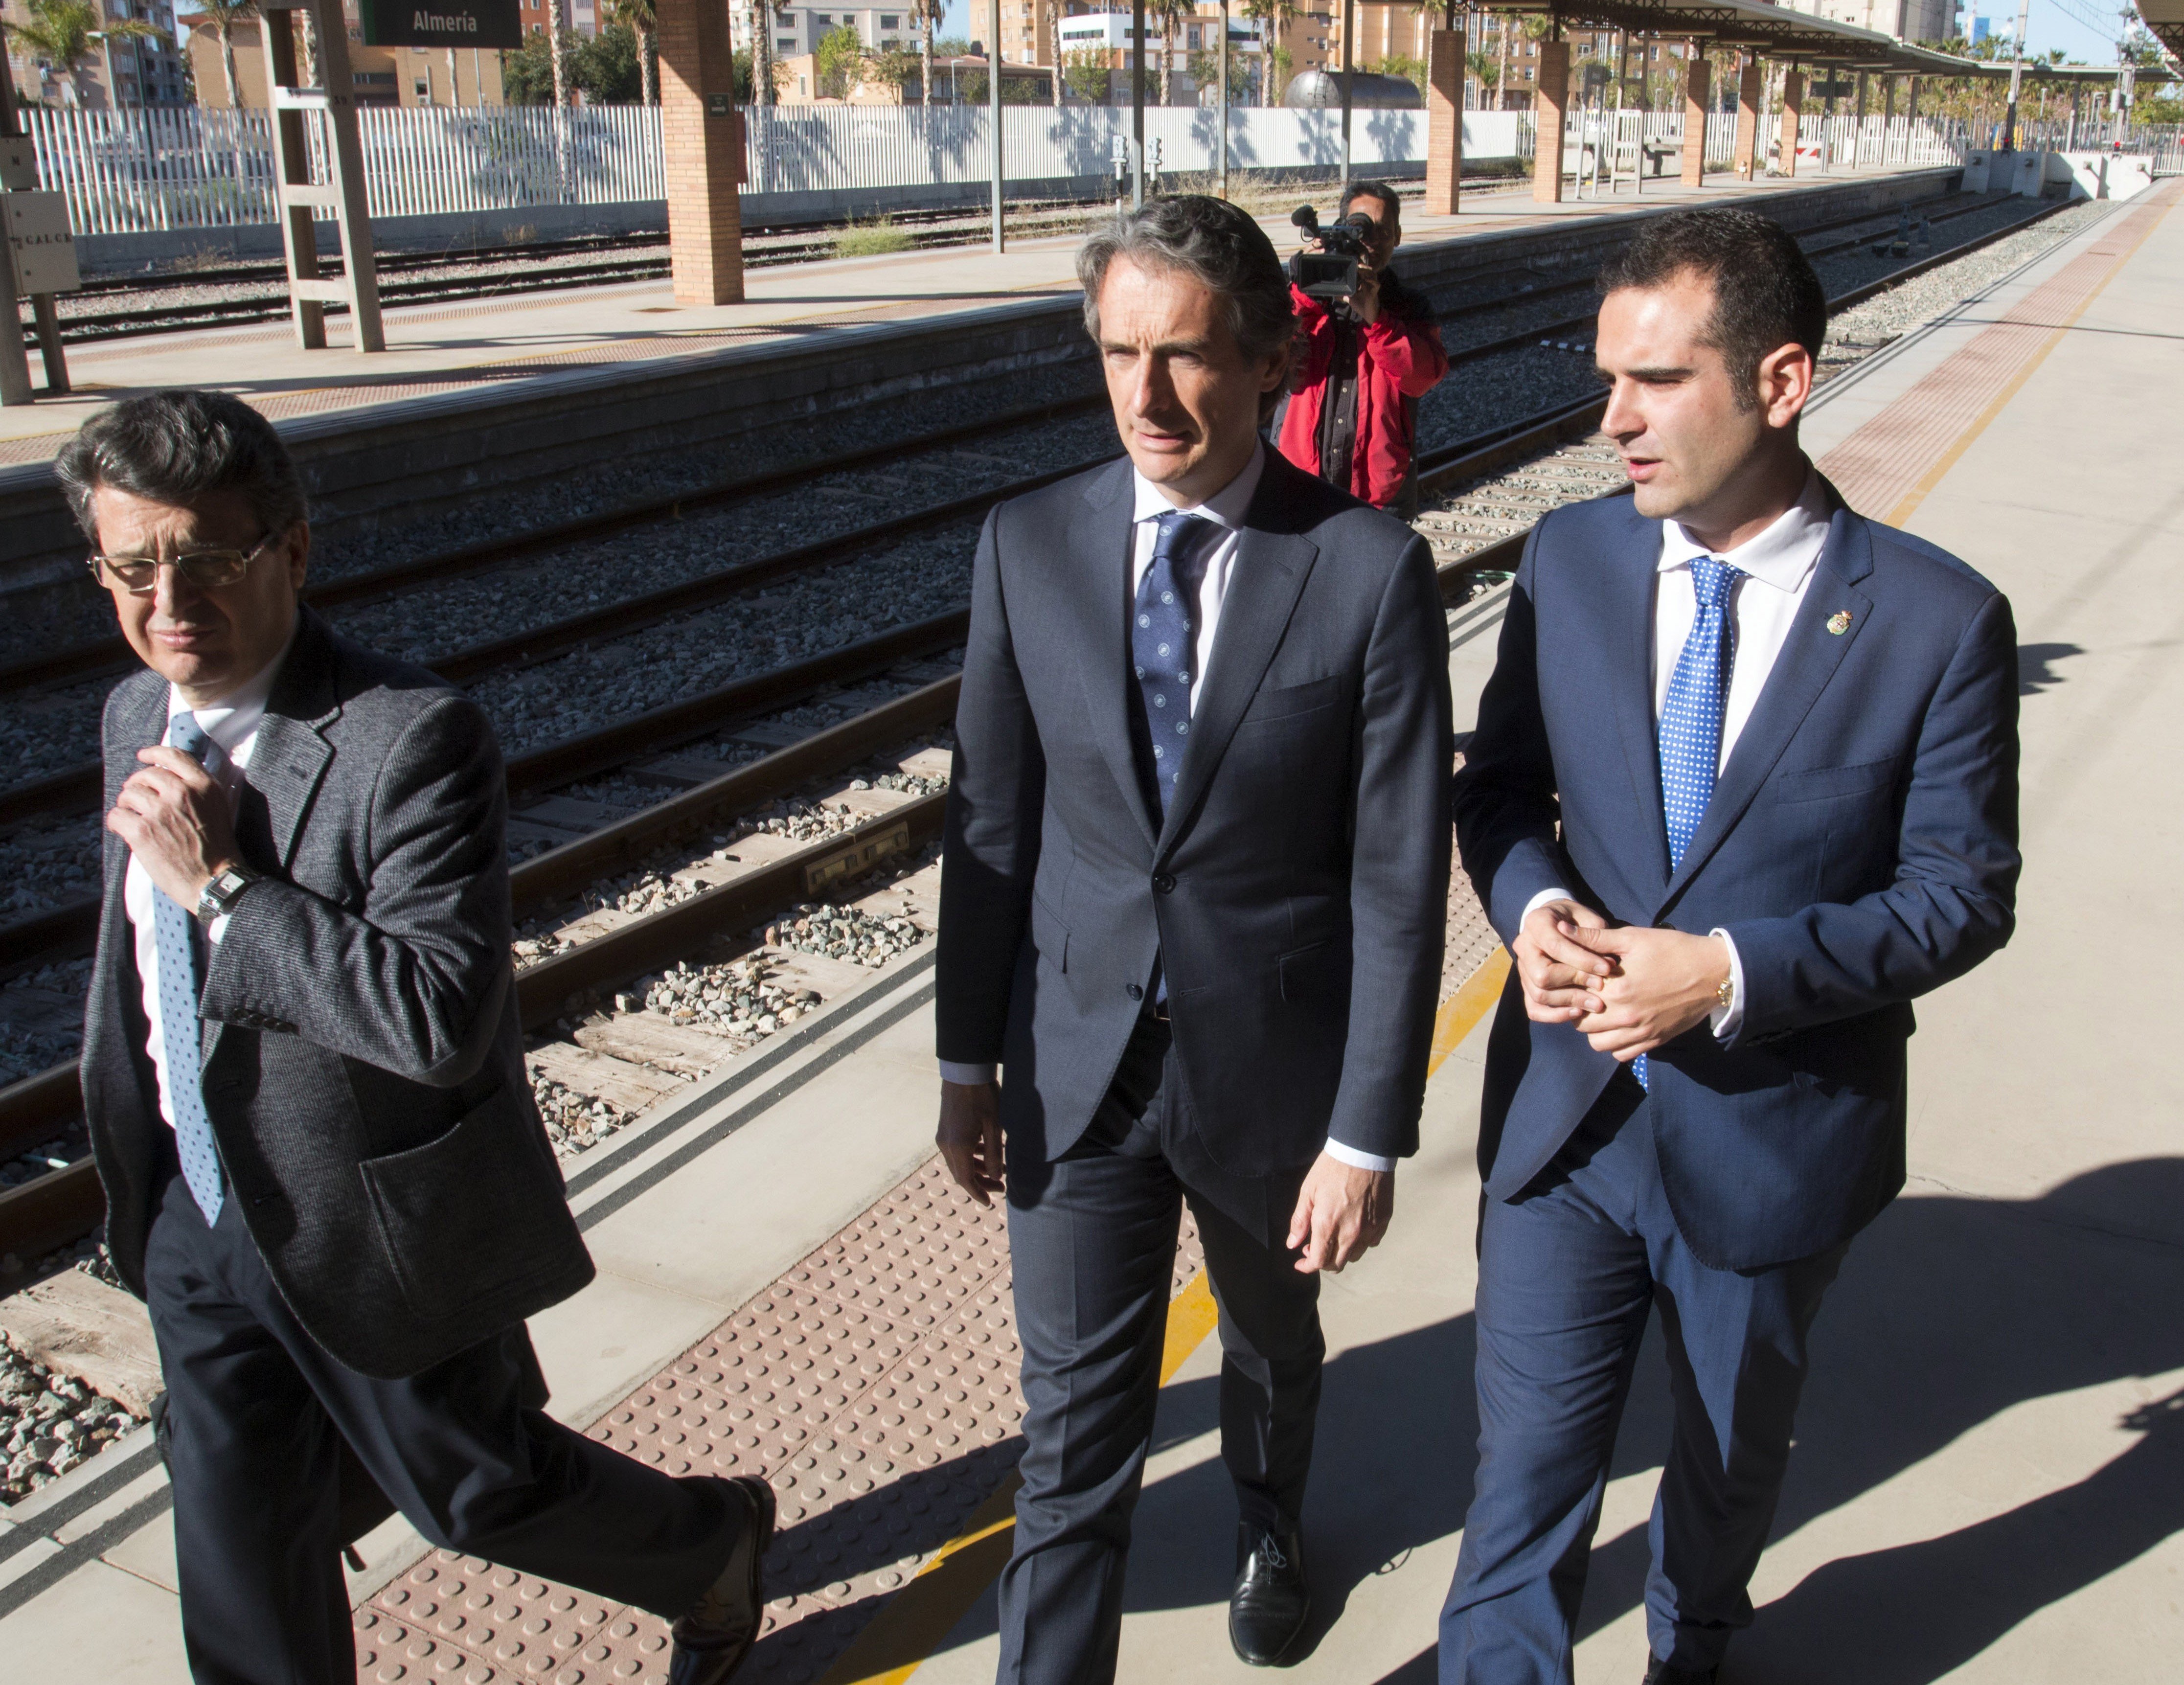 El Ministeri invertirà a Rodalies només 271 dels 1.900 milions anunciats per Rajoy